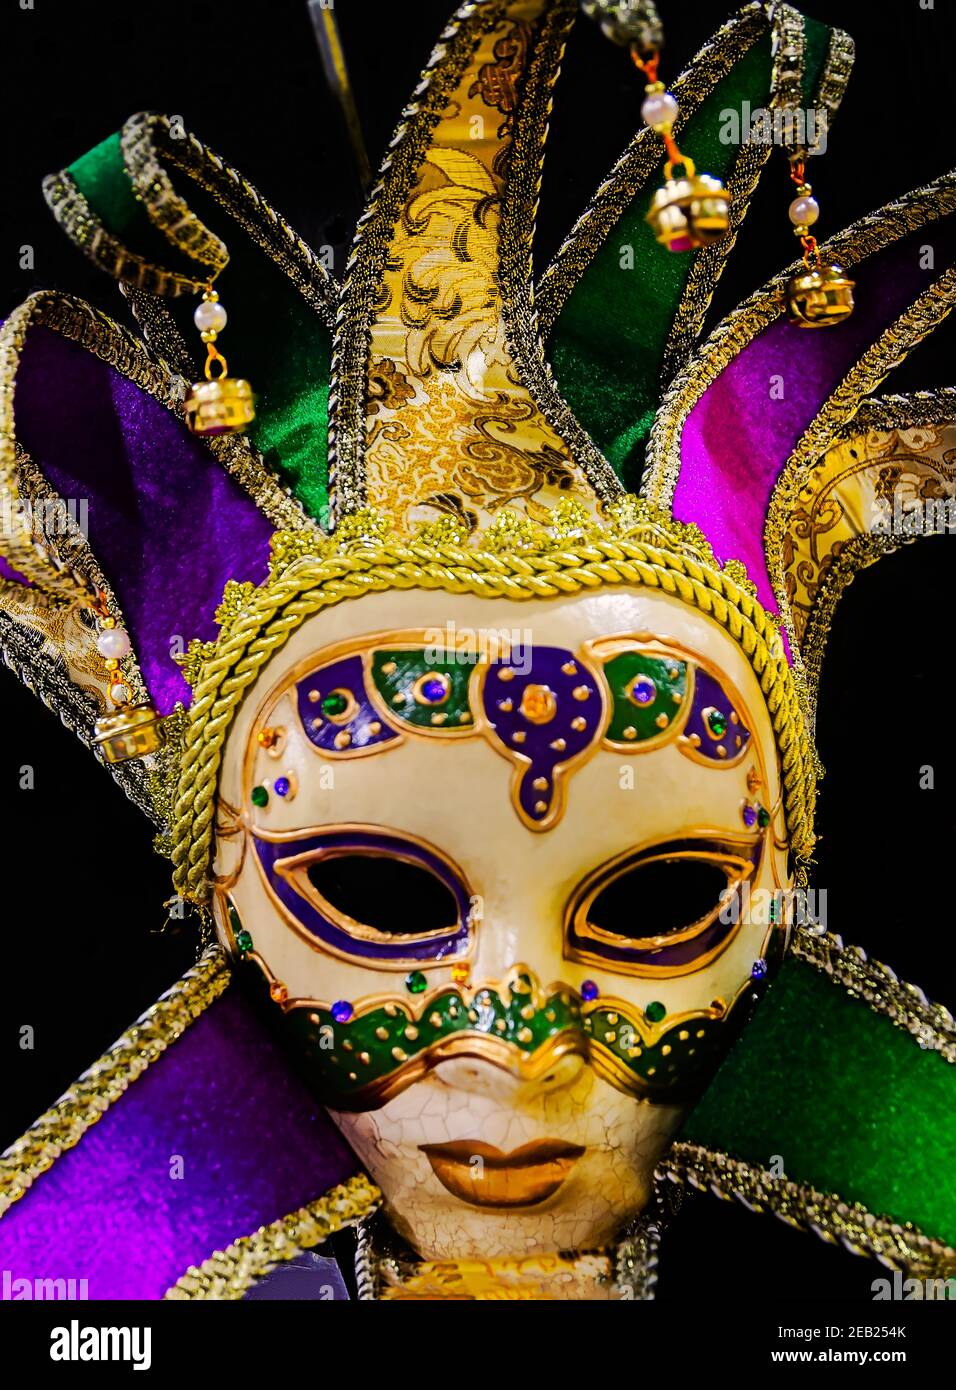 En la tienda Mardi Gras de Toomey, el 8 de febrero de 2021, en Mobile, Alabama, se muestra una máscara jester veneciana de cara completa. Foto de stock